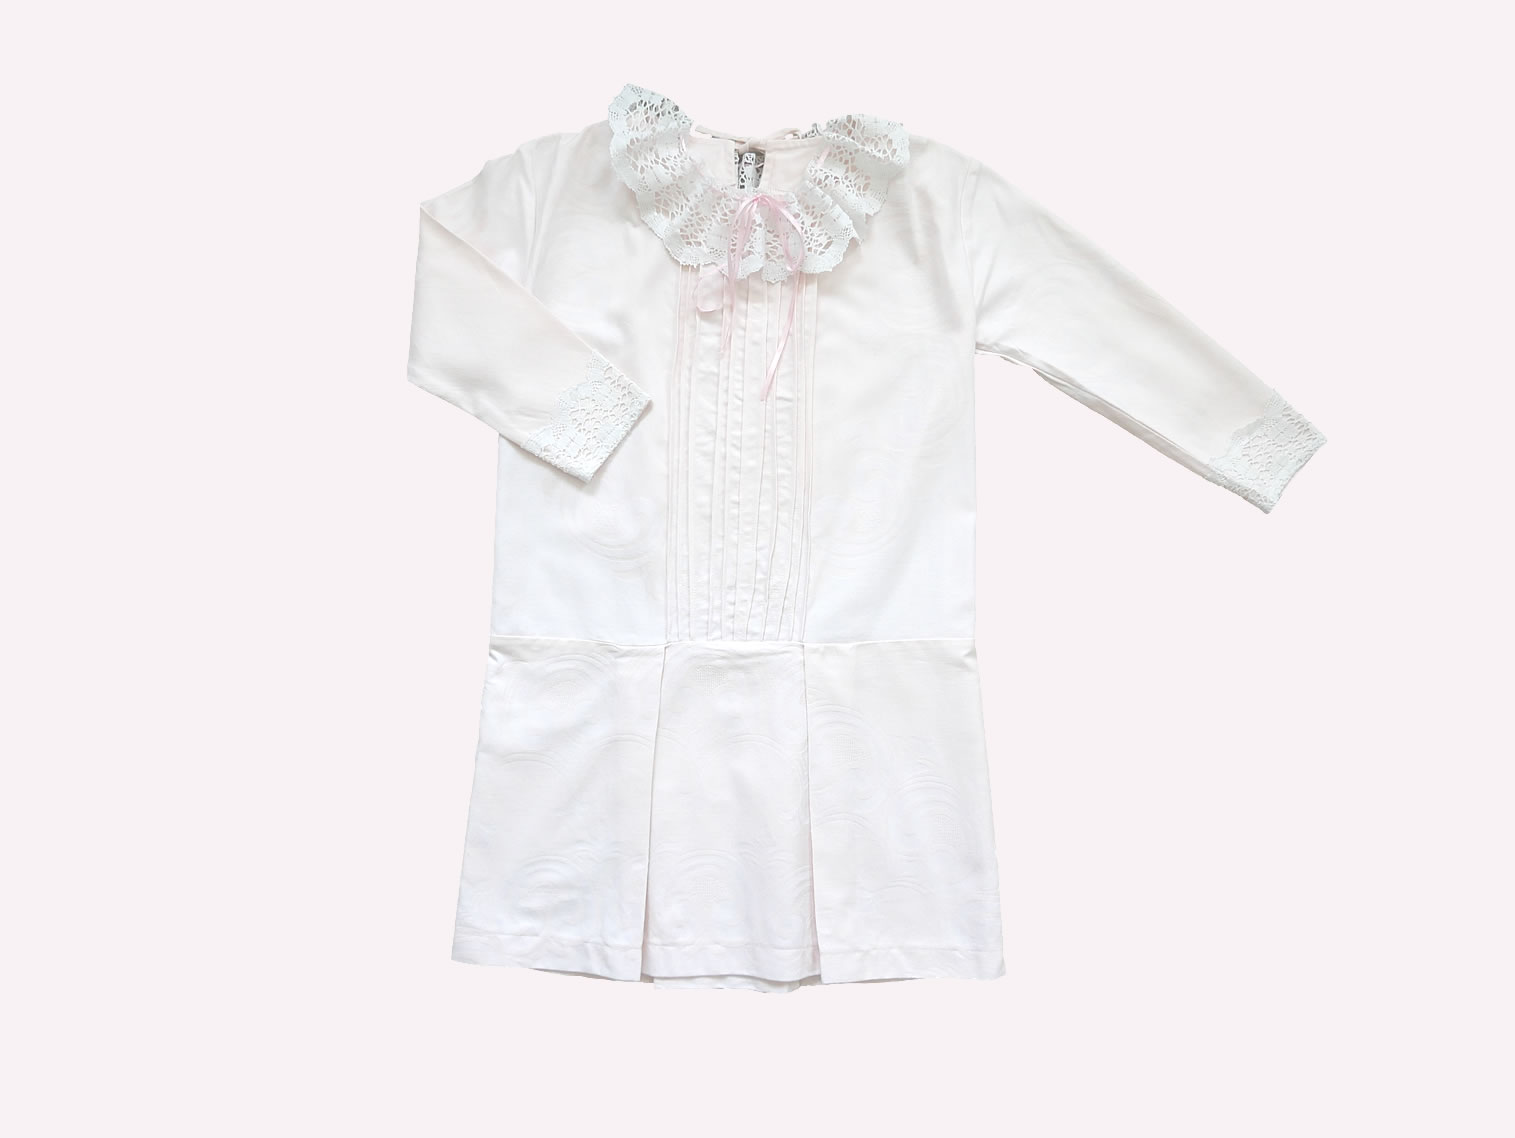 maedchen-kinder-kleid-vintage-hemdchen-rosa-spitzenkragen-zwanziger-jahre-festliche-kindermode-bullerbue